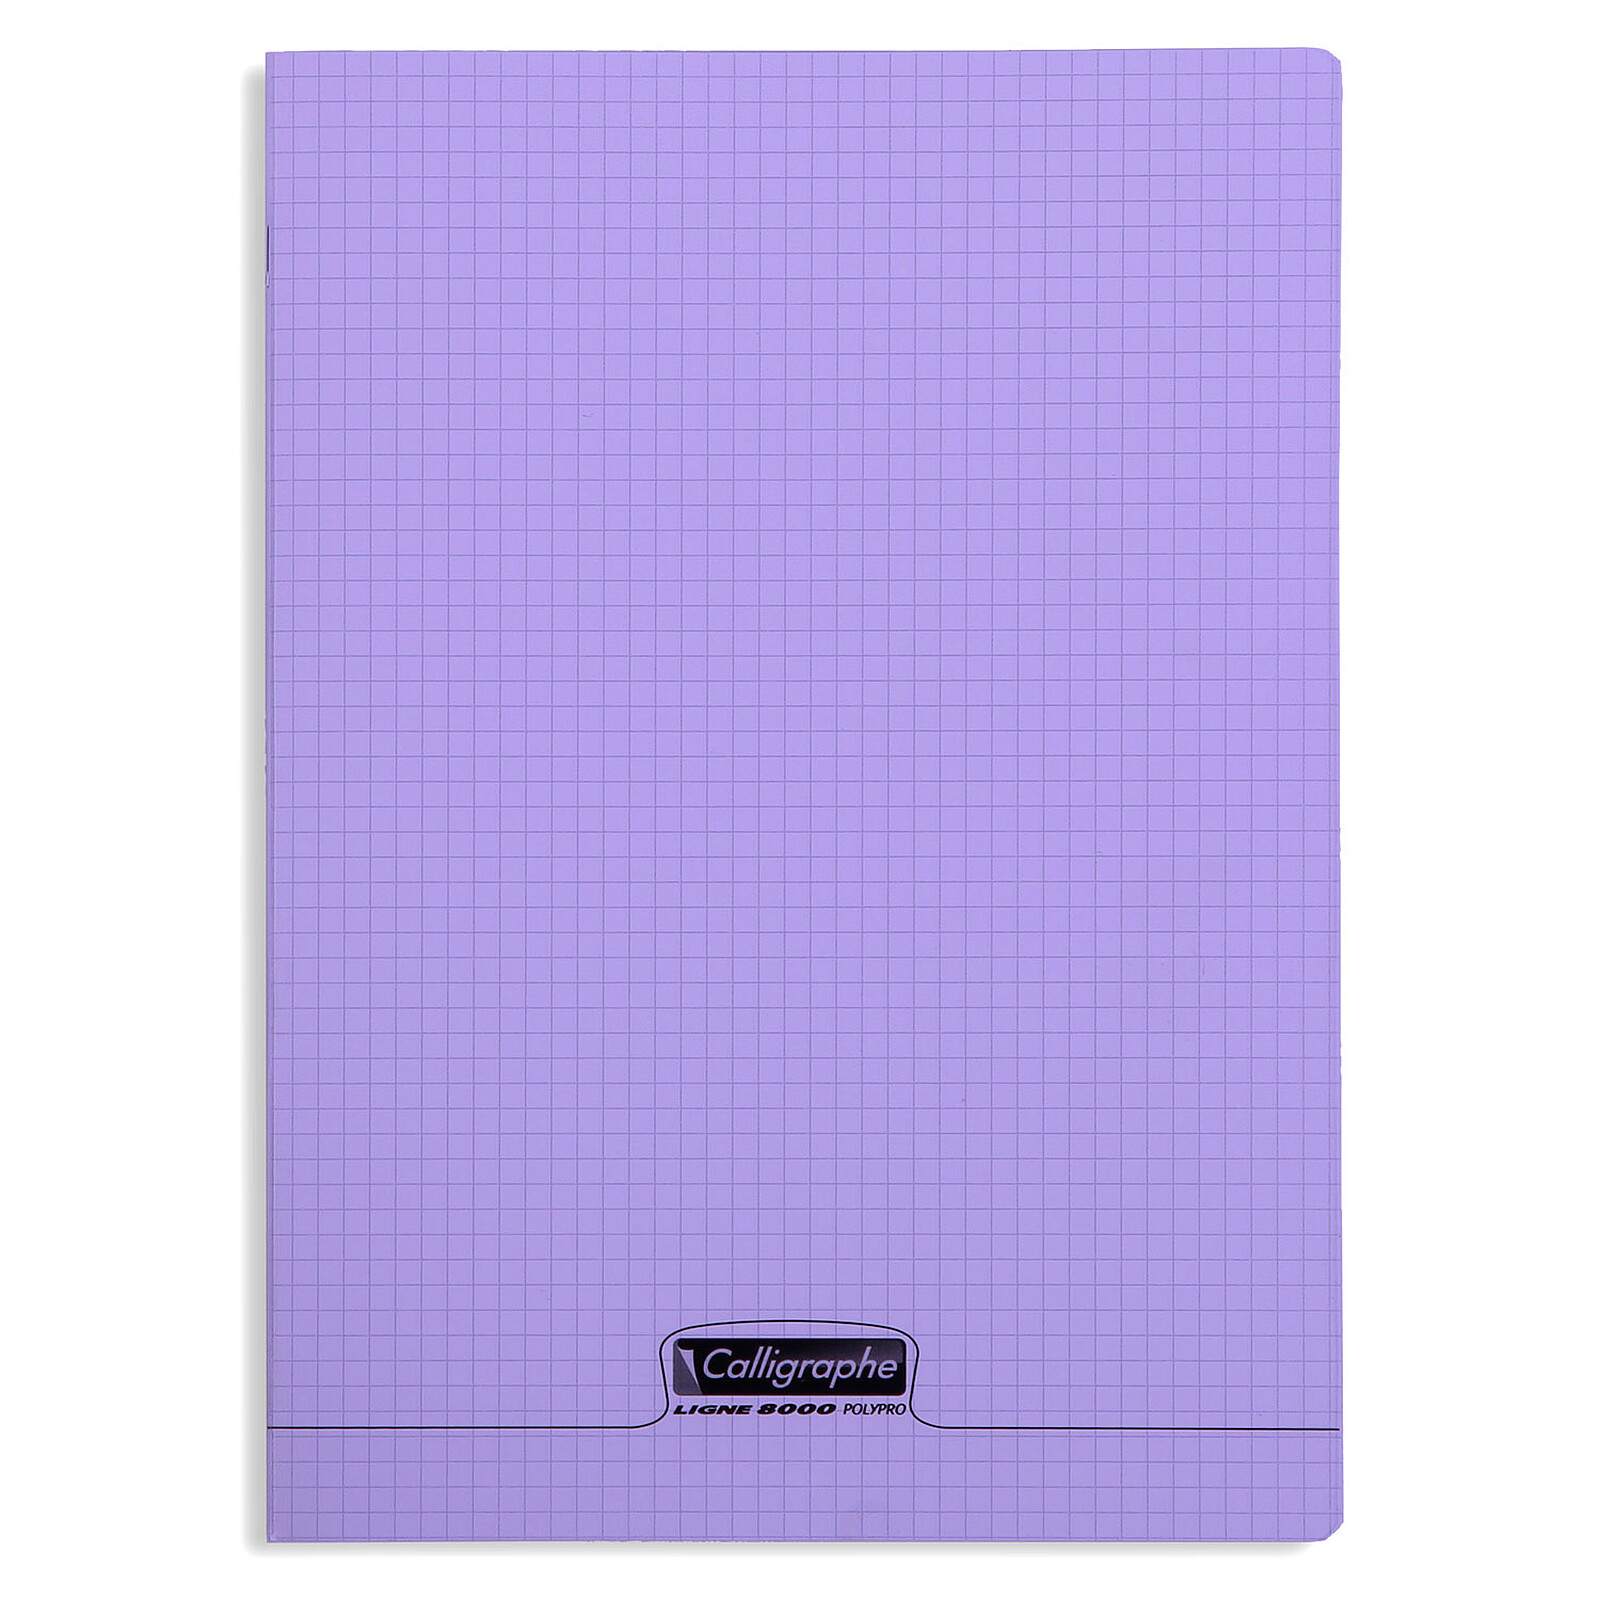 Calligraphe 8000 Polypro Cahier 96 pages 21 x 29.7 cm petits carreaux  Violet - Cahier - LDLC